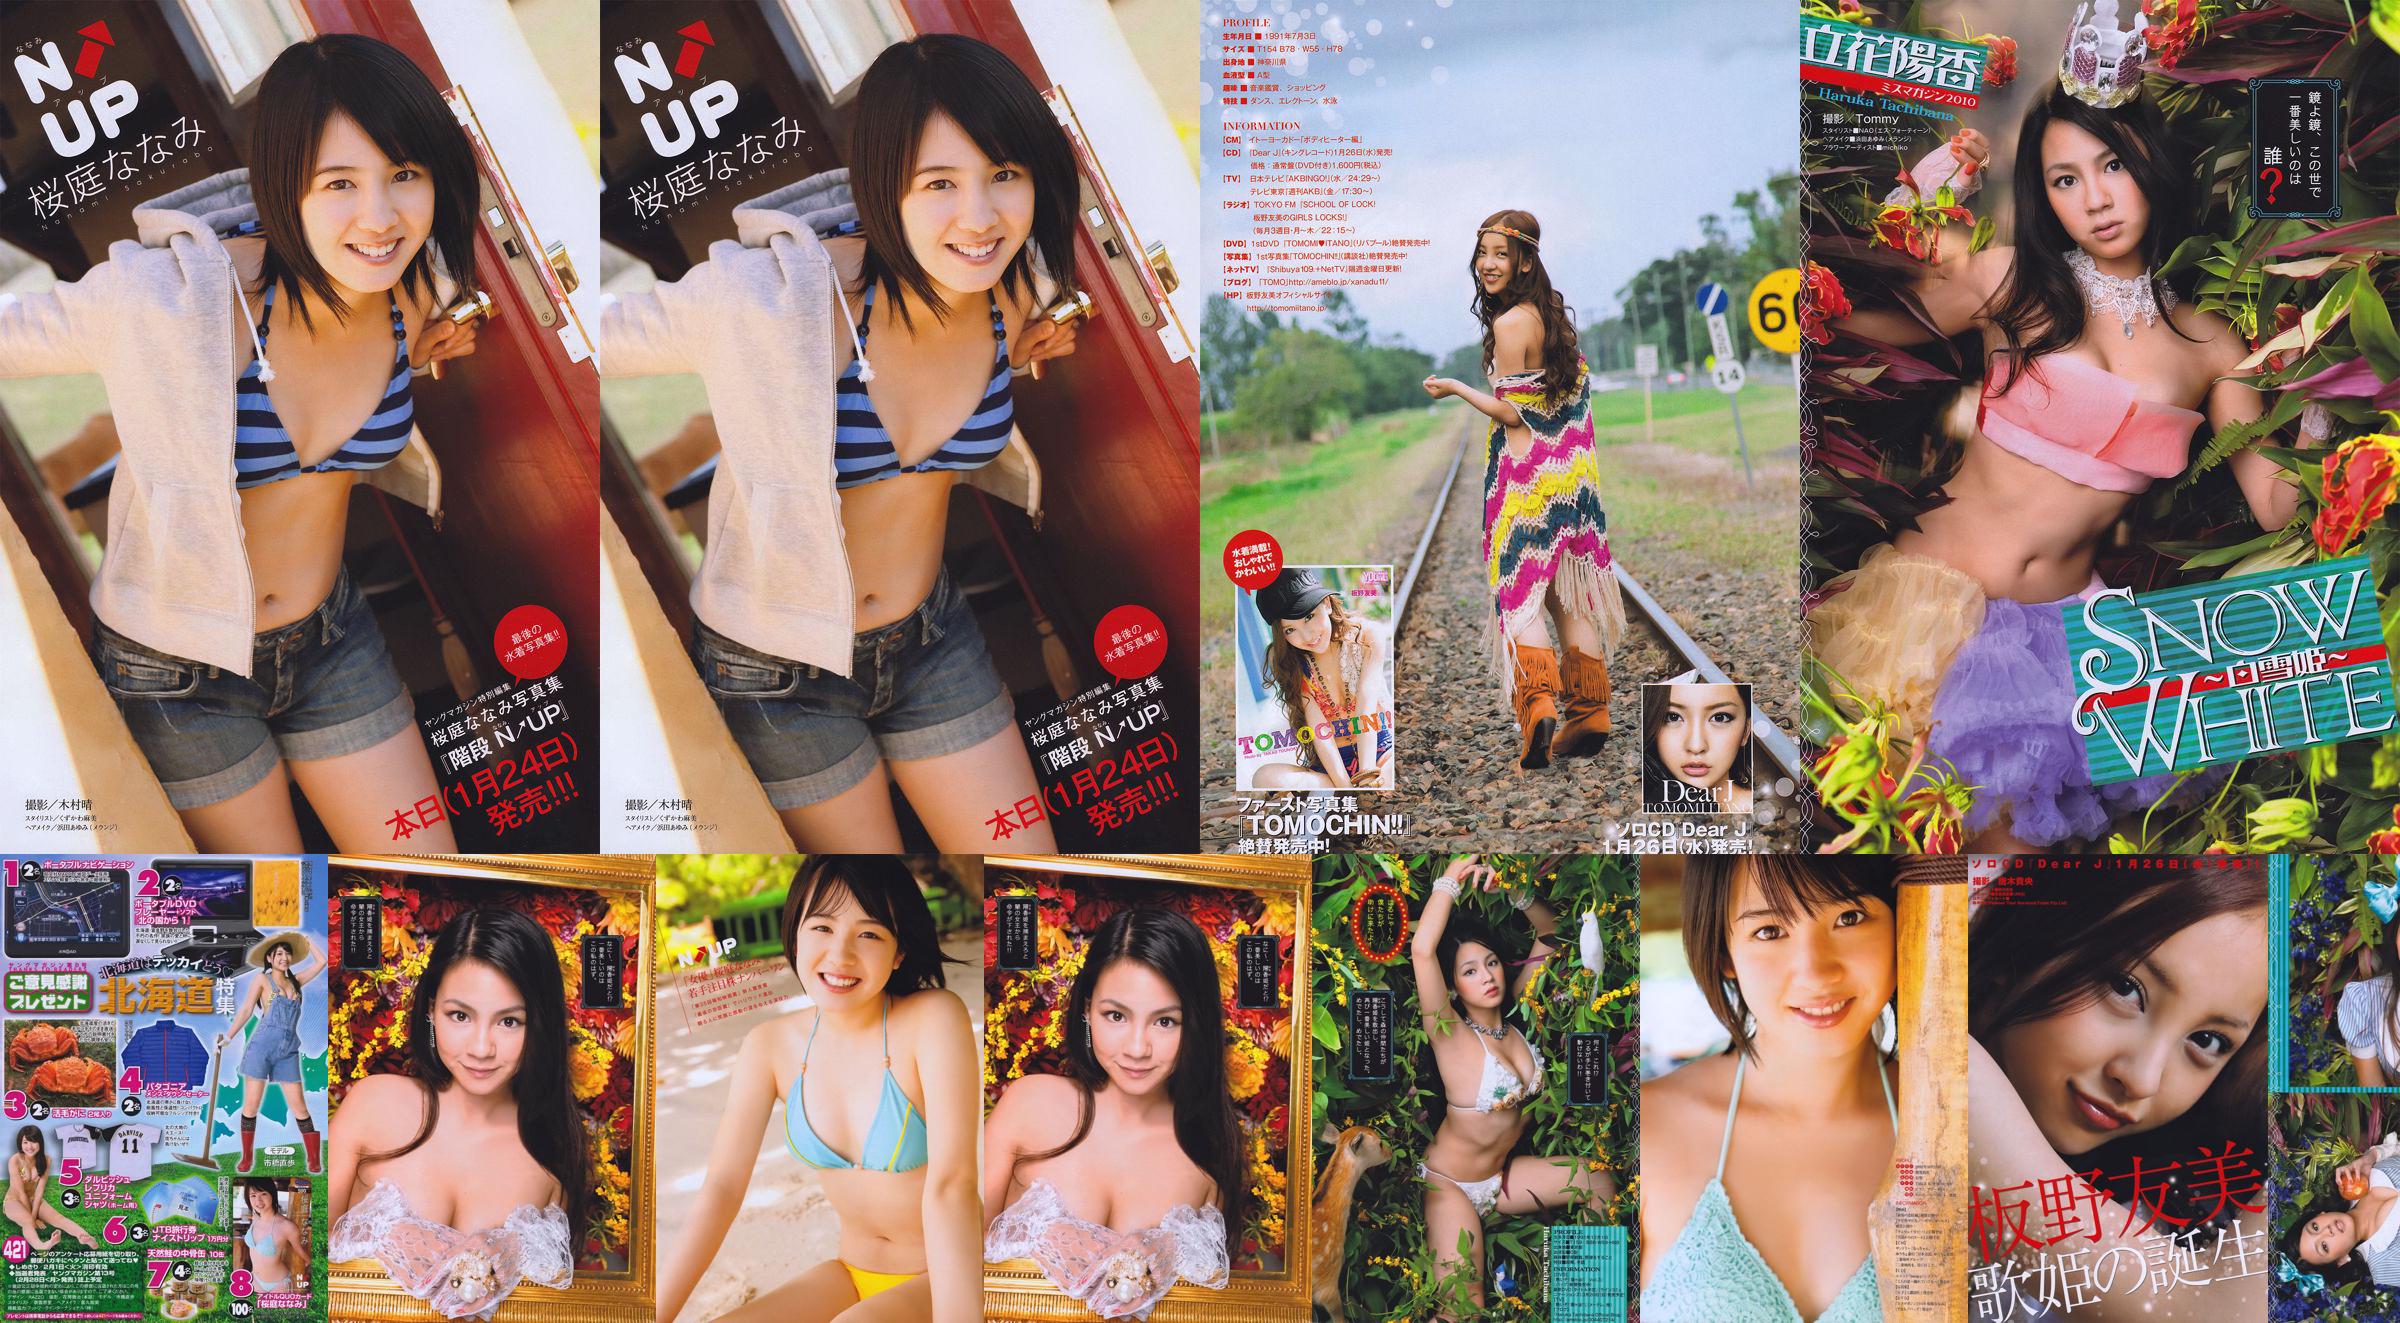 [Young Magazine] Nanami Sakuraba 2011 nr 08 Foto No.4720f4 Pagina 1